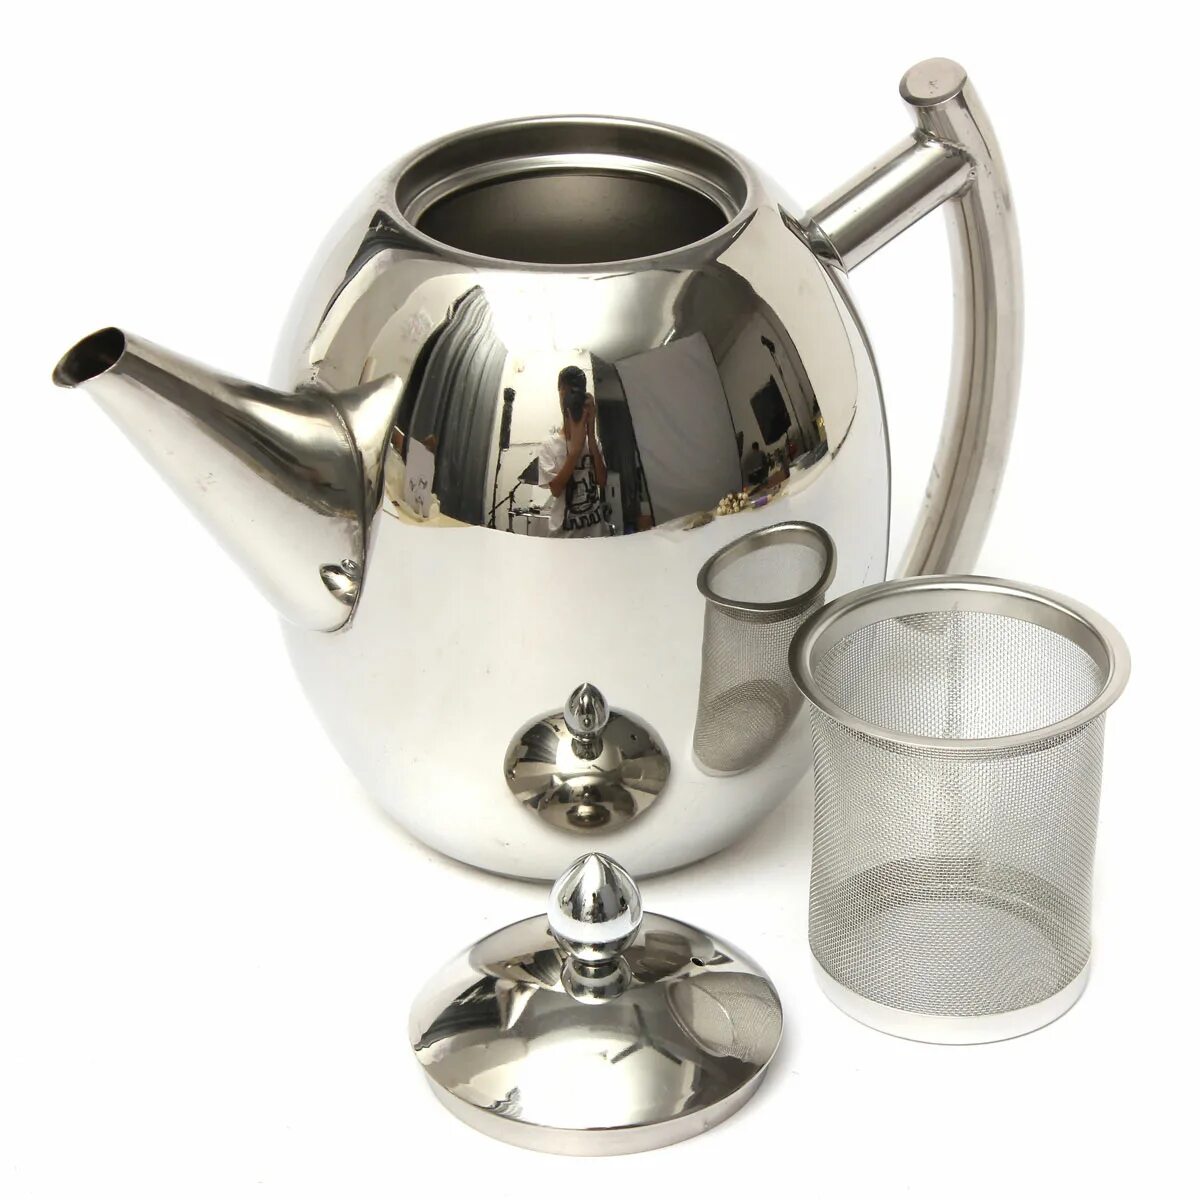 Чайник для холодной воды. Tea Coffee Pot чайник. Чайник заварочный из нержавеющей стали, 1500 мл. Stainless Steel 18/10 чайник заварочный. Чайник с фильтром для заварки нержавеющая сталь 2000 ml.